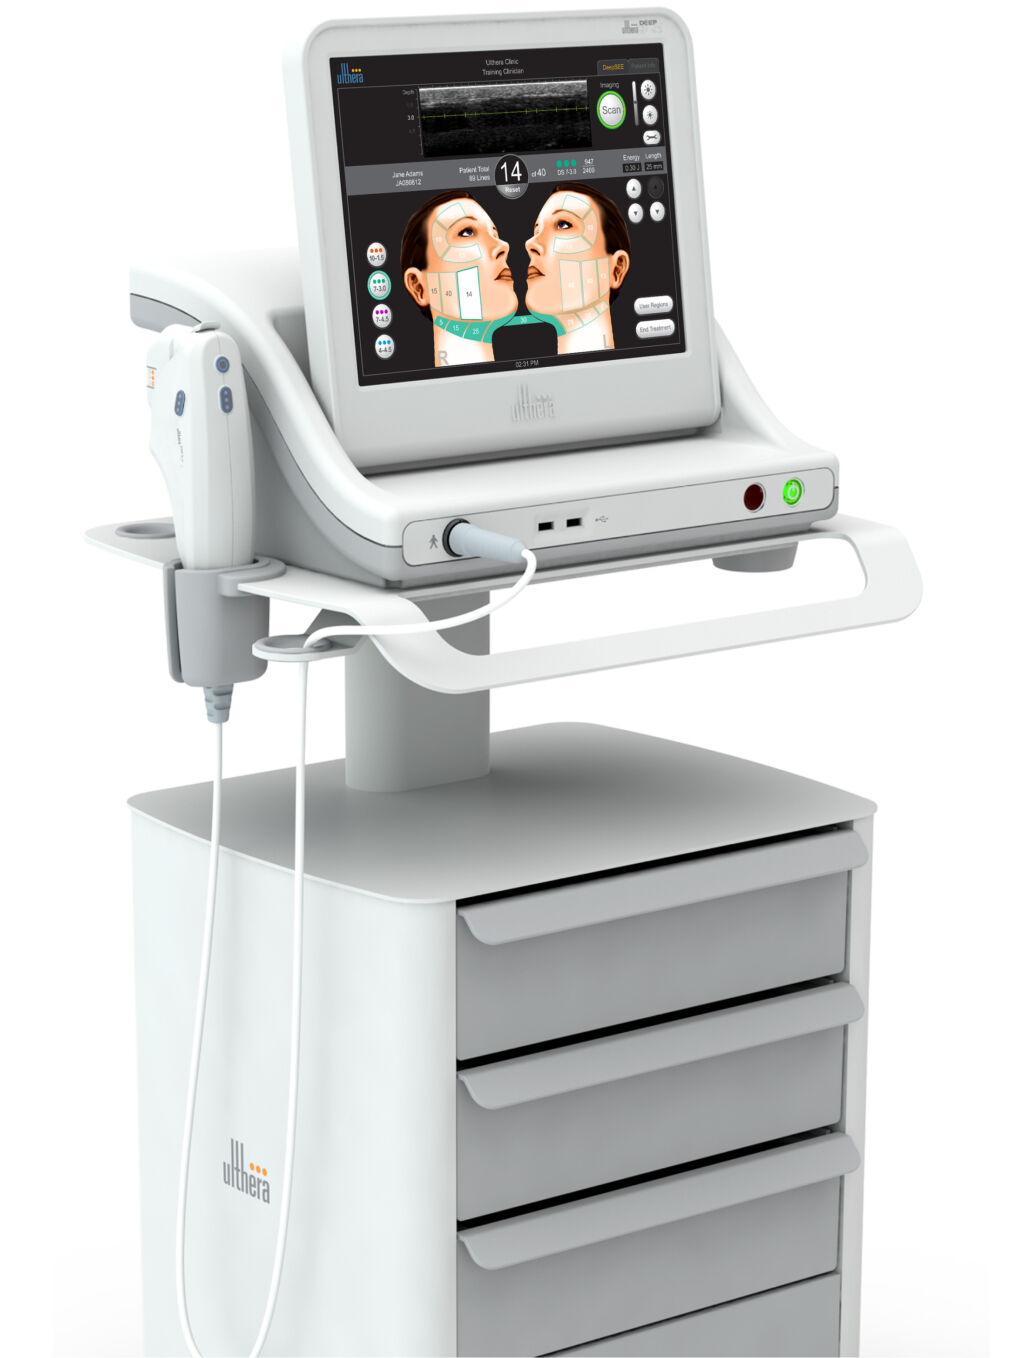 Ein Gerät von Ultherapy® für ein innovatives, nichtinvasives Verfahren, bei dem mikrofokussierte Ultraschallwellen gezielt in tieferliegende Hautschichten geschickt werden.